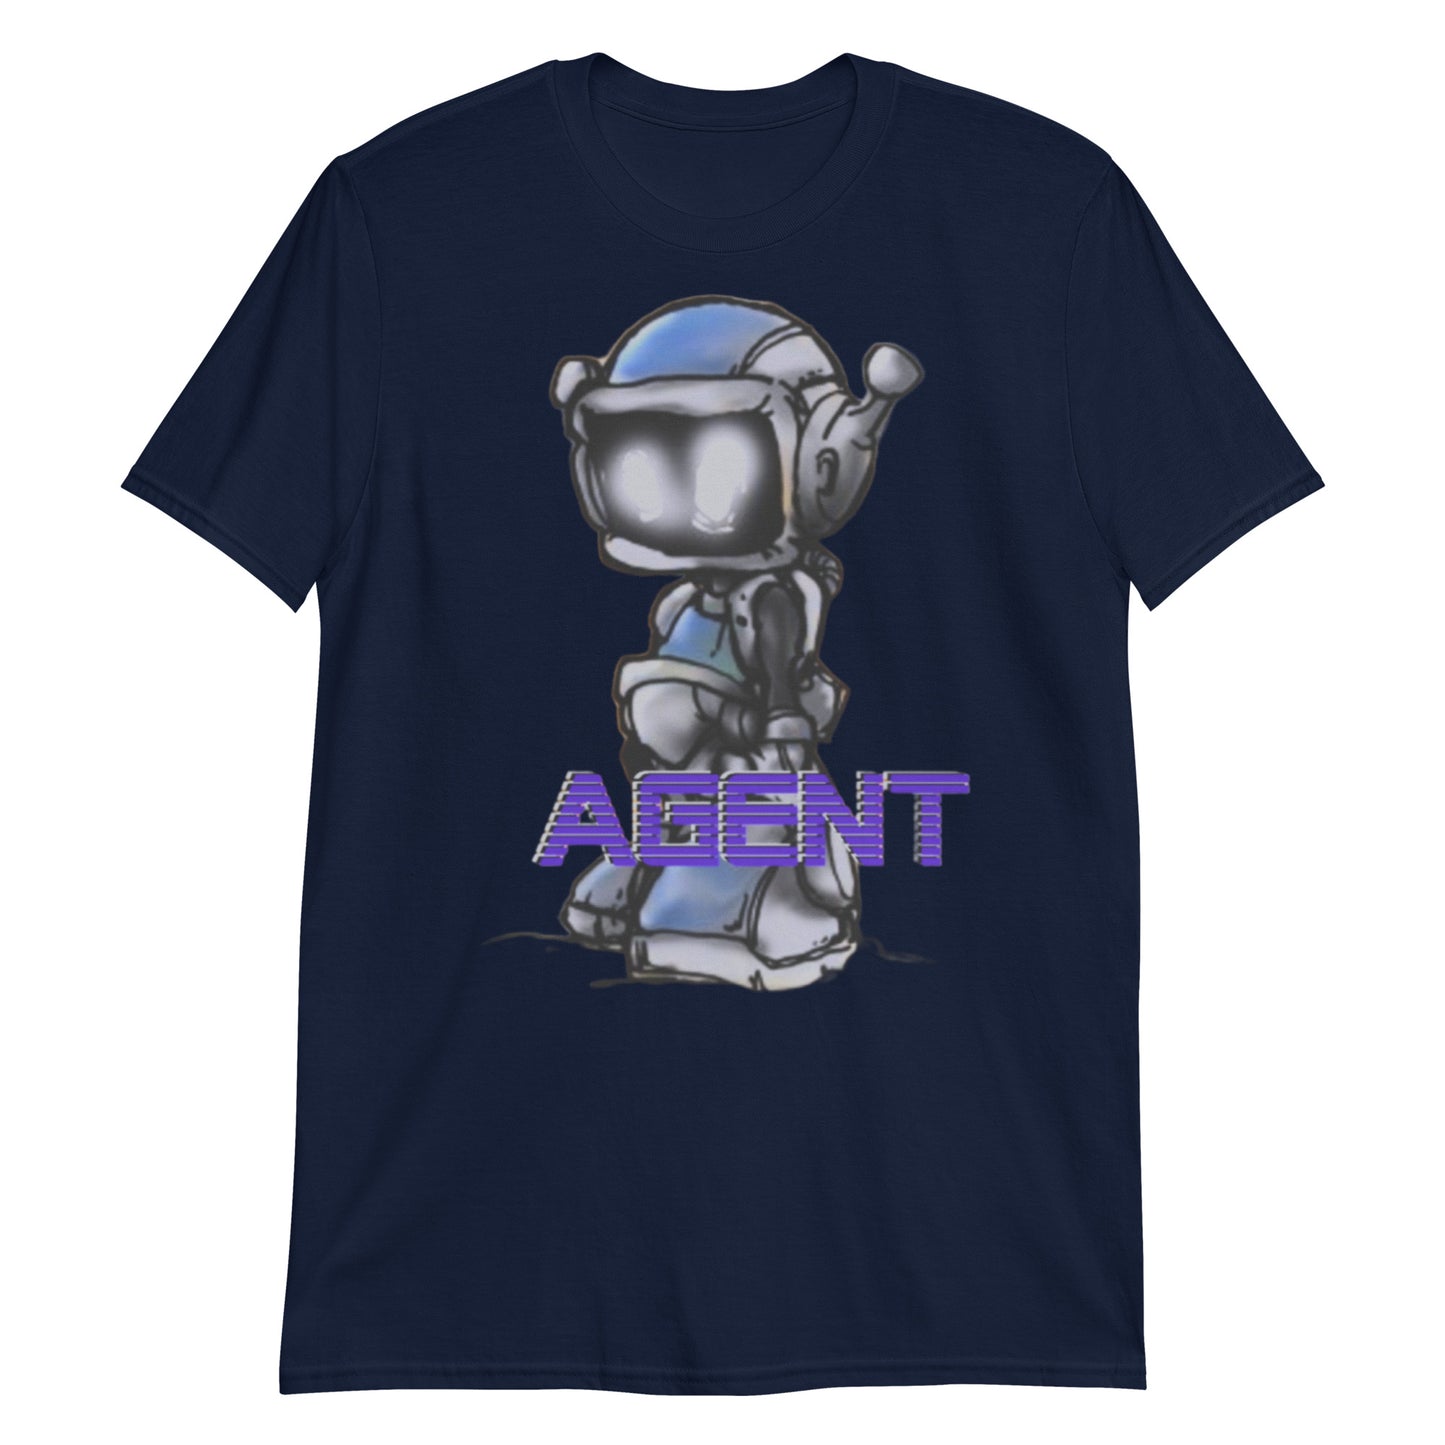 Agent Blue Robot T-Shirt -Discount Tee